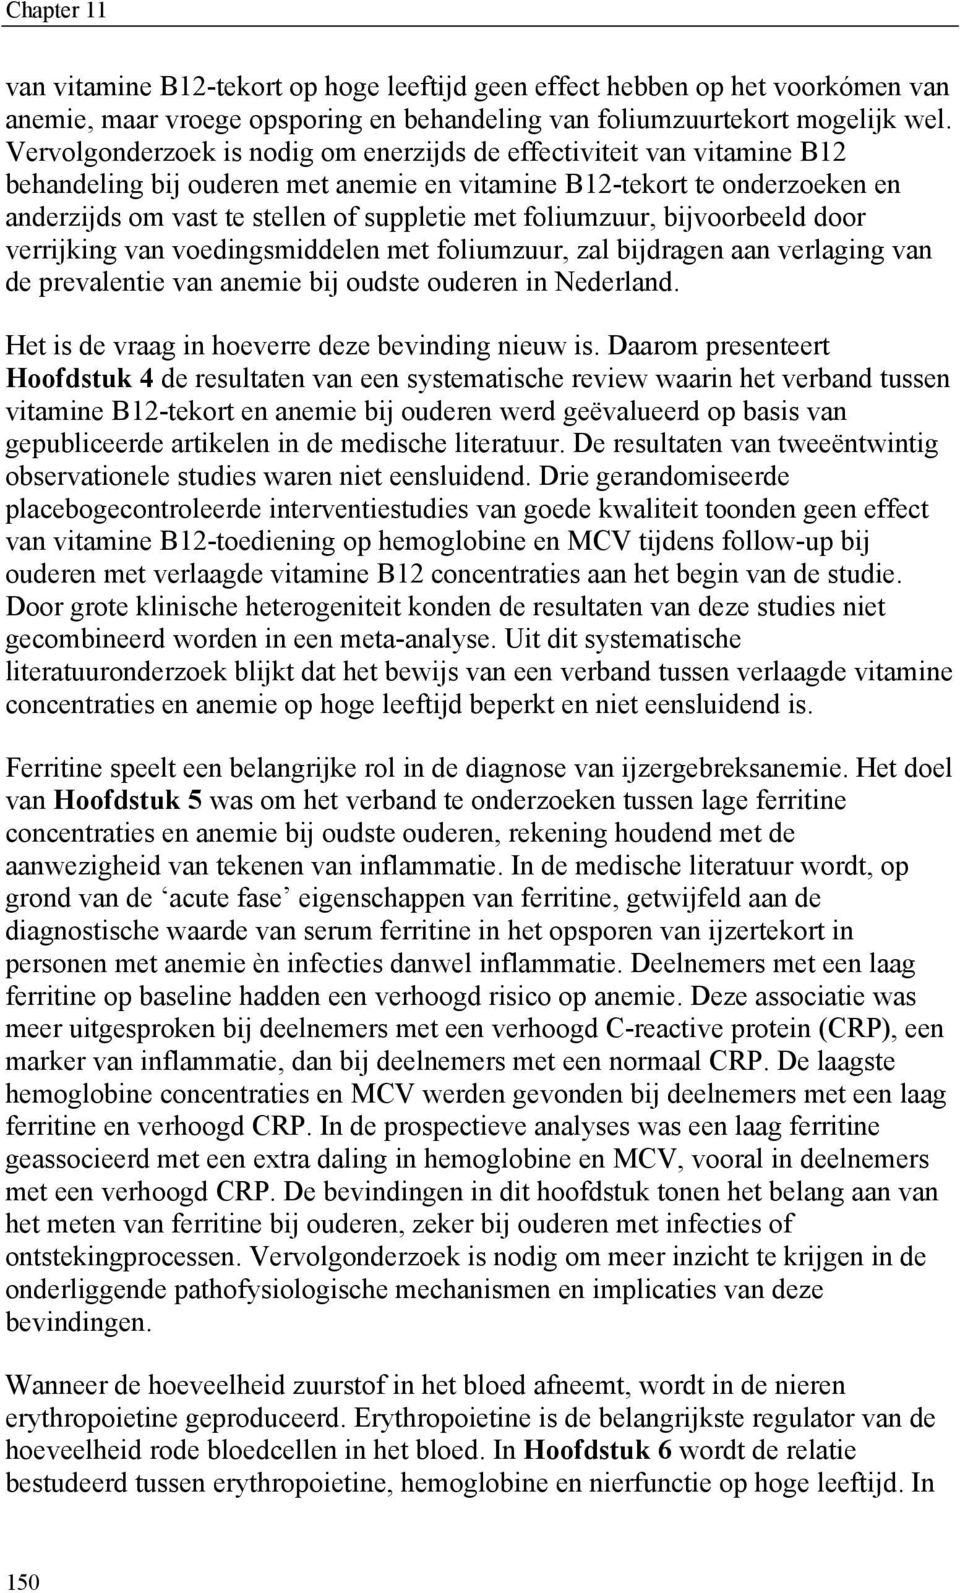 foliumzuur, bijvoorbeeld door verrijking van voedingsmiddelen met foliumzuur, zal bijdragen aan verlaging van de prevalentie van anemie bij oudste ouderen in Nederland.